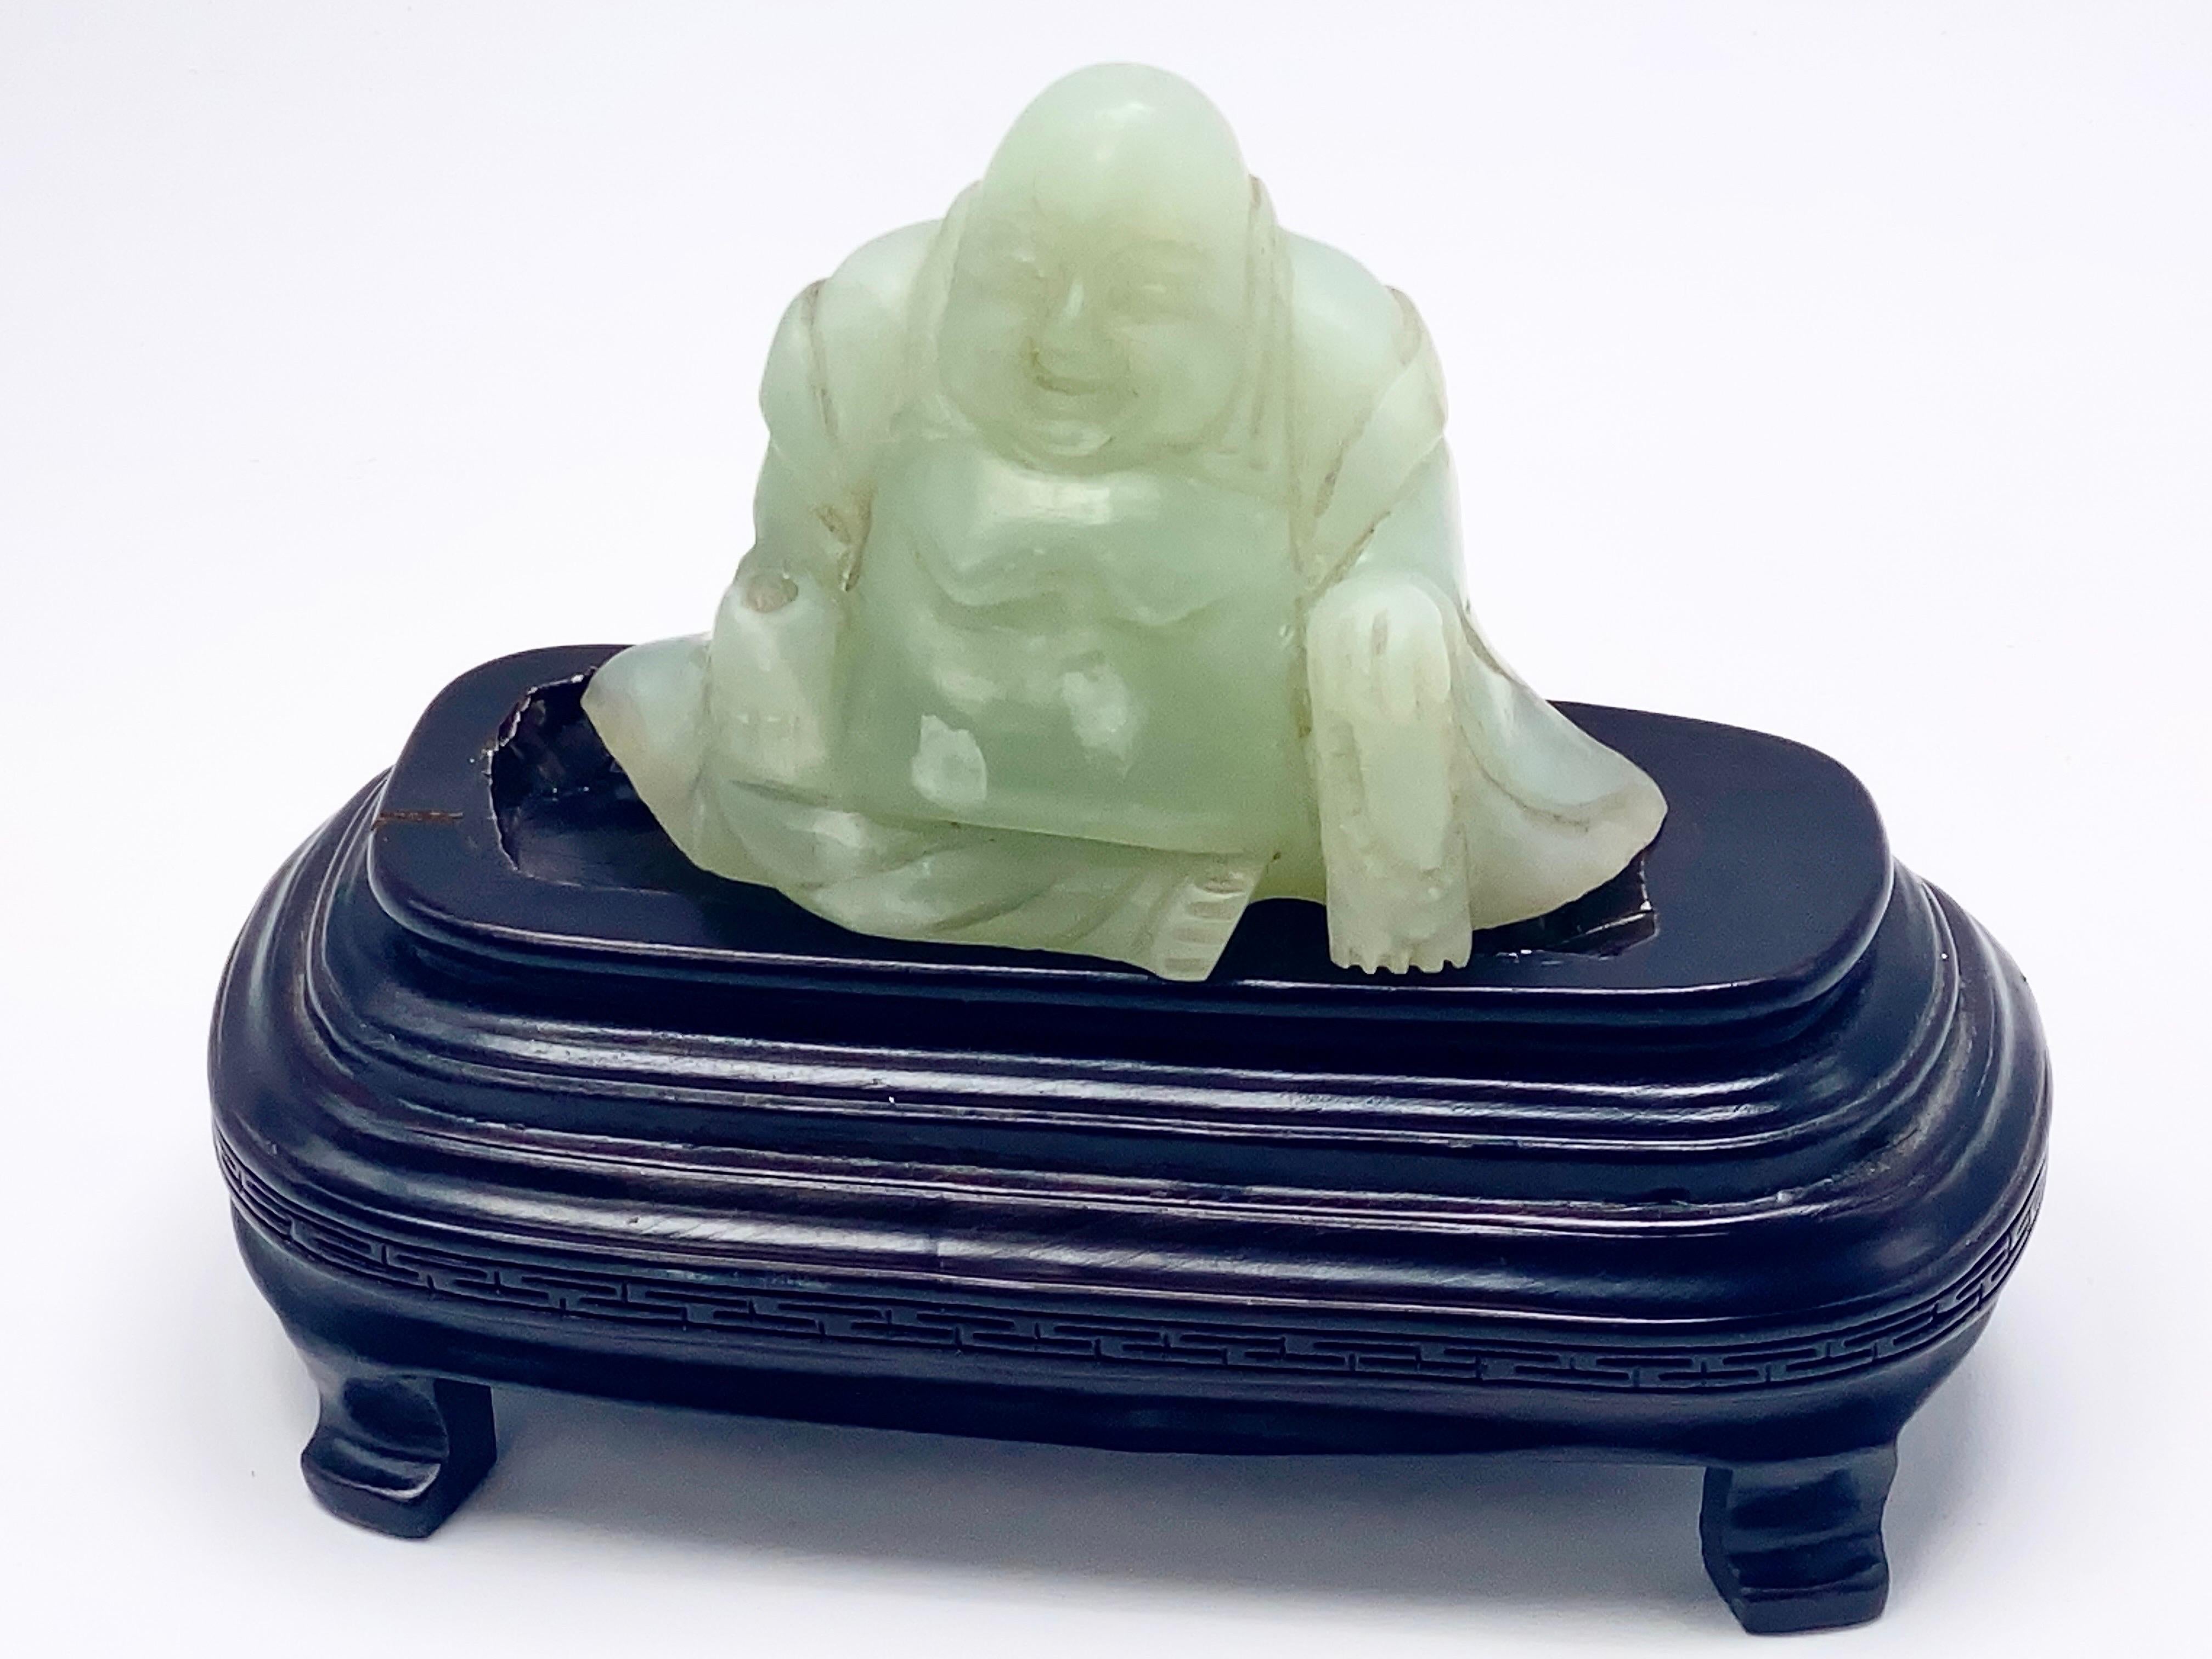 Ce bouddha est en jade, en, une couleur verte. Il est assis sur son socle en bois.
Cela a été fait en Chine au cours du 20ème siècle.